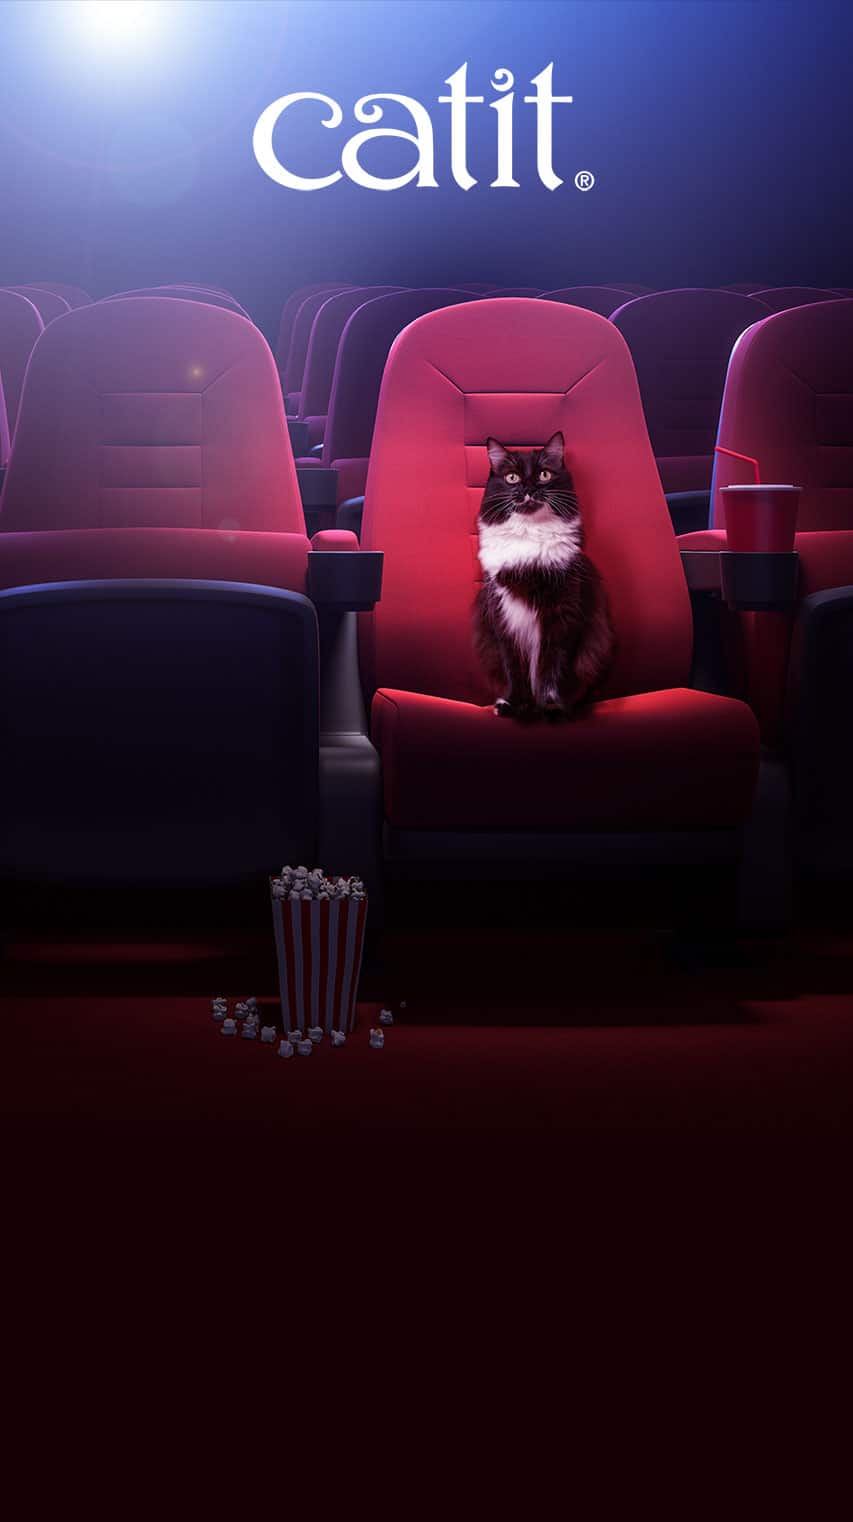 Os gatos no cinema Frame